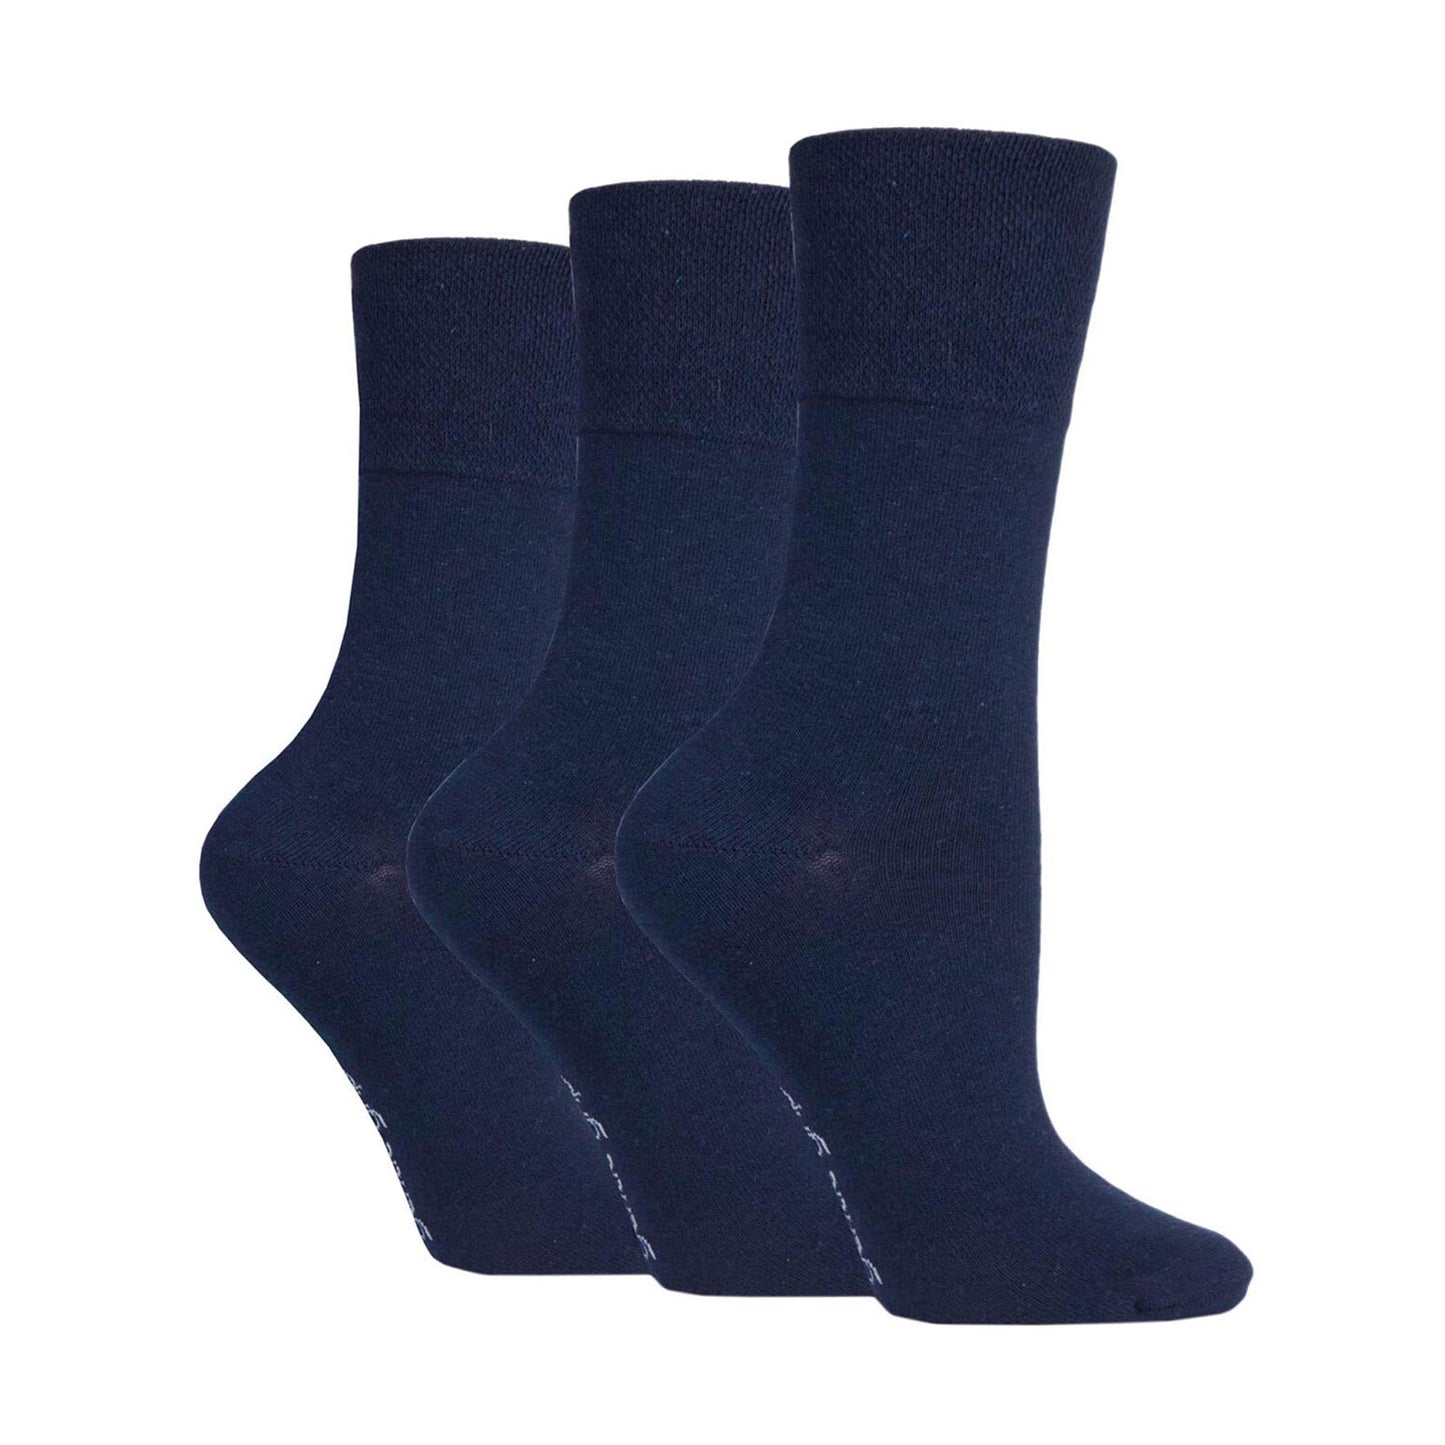 Gentle Grip® 3 pair pack, black or navy women's socks